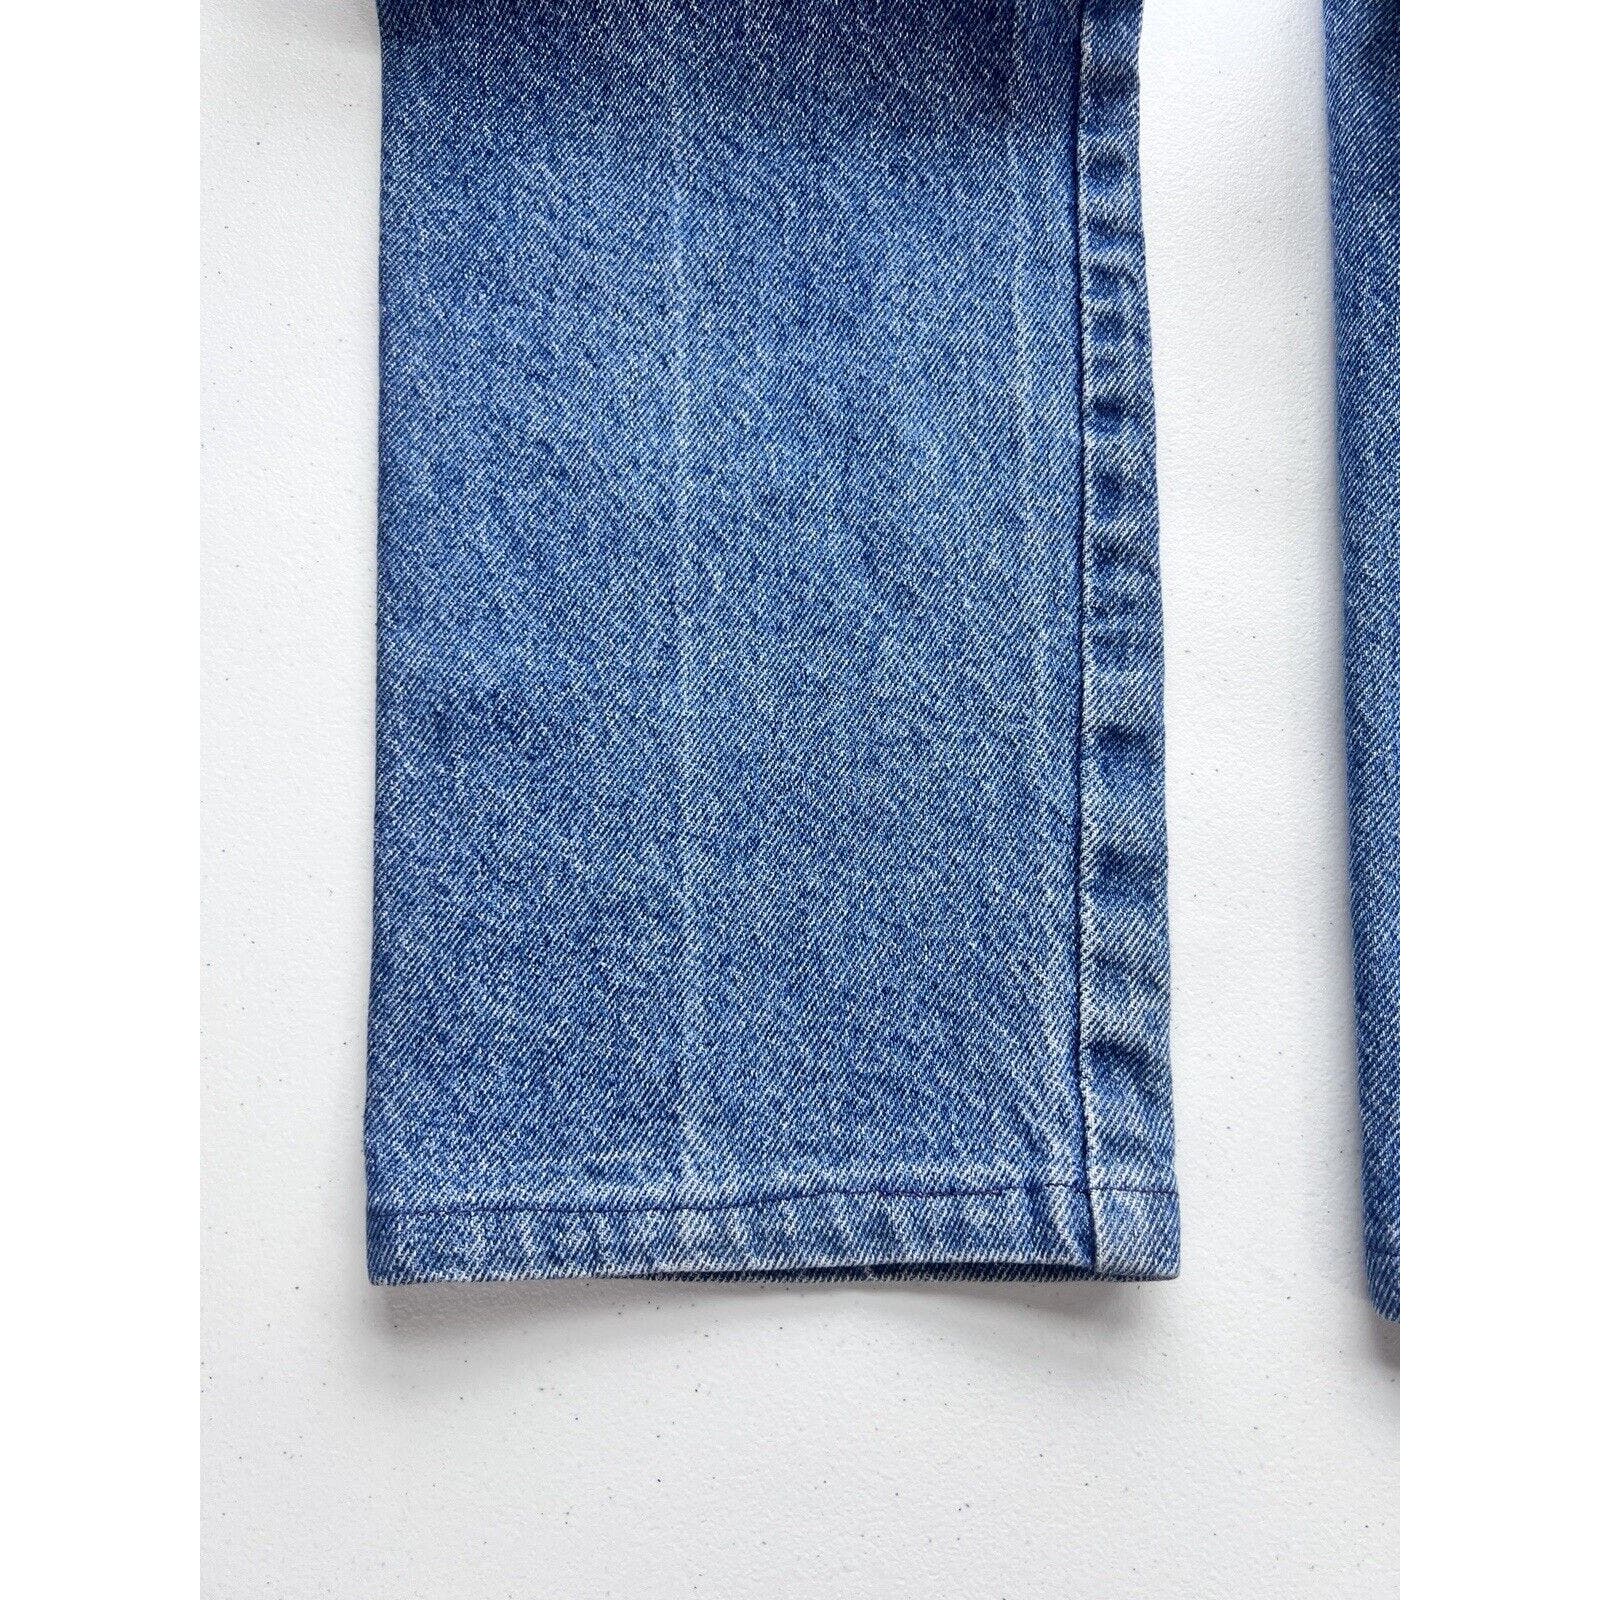 Vintage Roughrider Women’s 7 / 8 High Waist Western Jeans Medium Wash 26x31